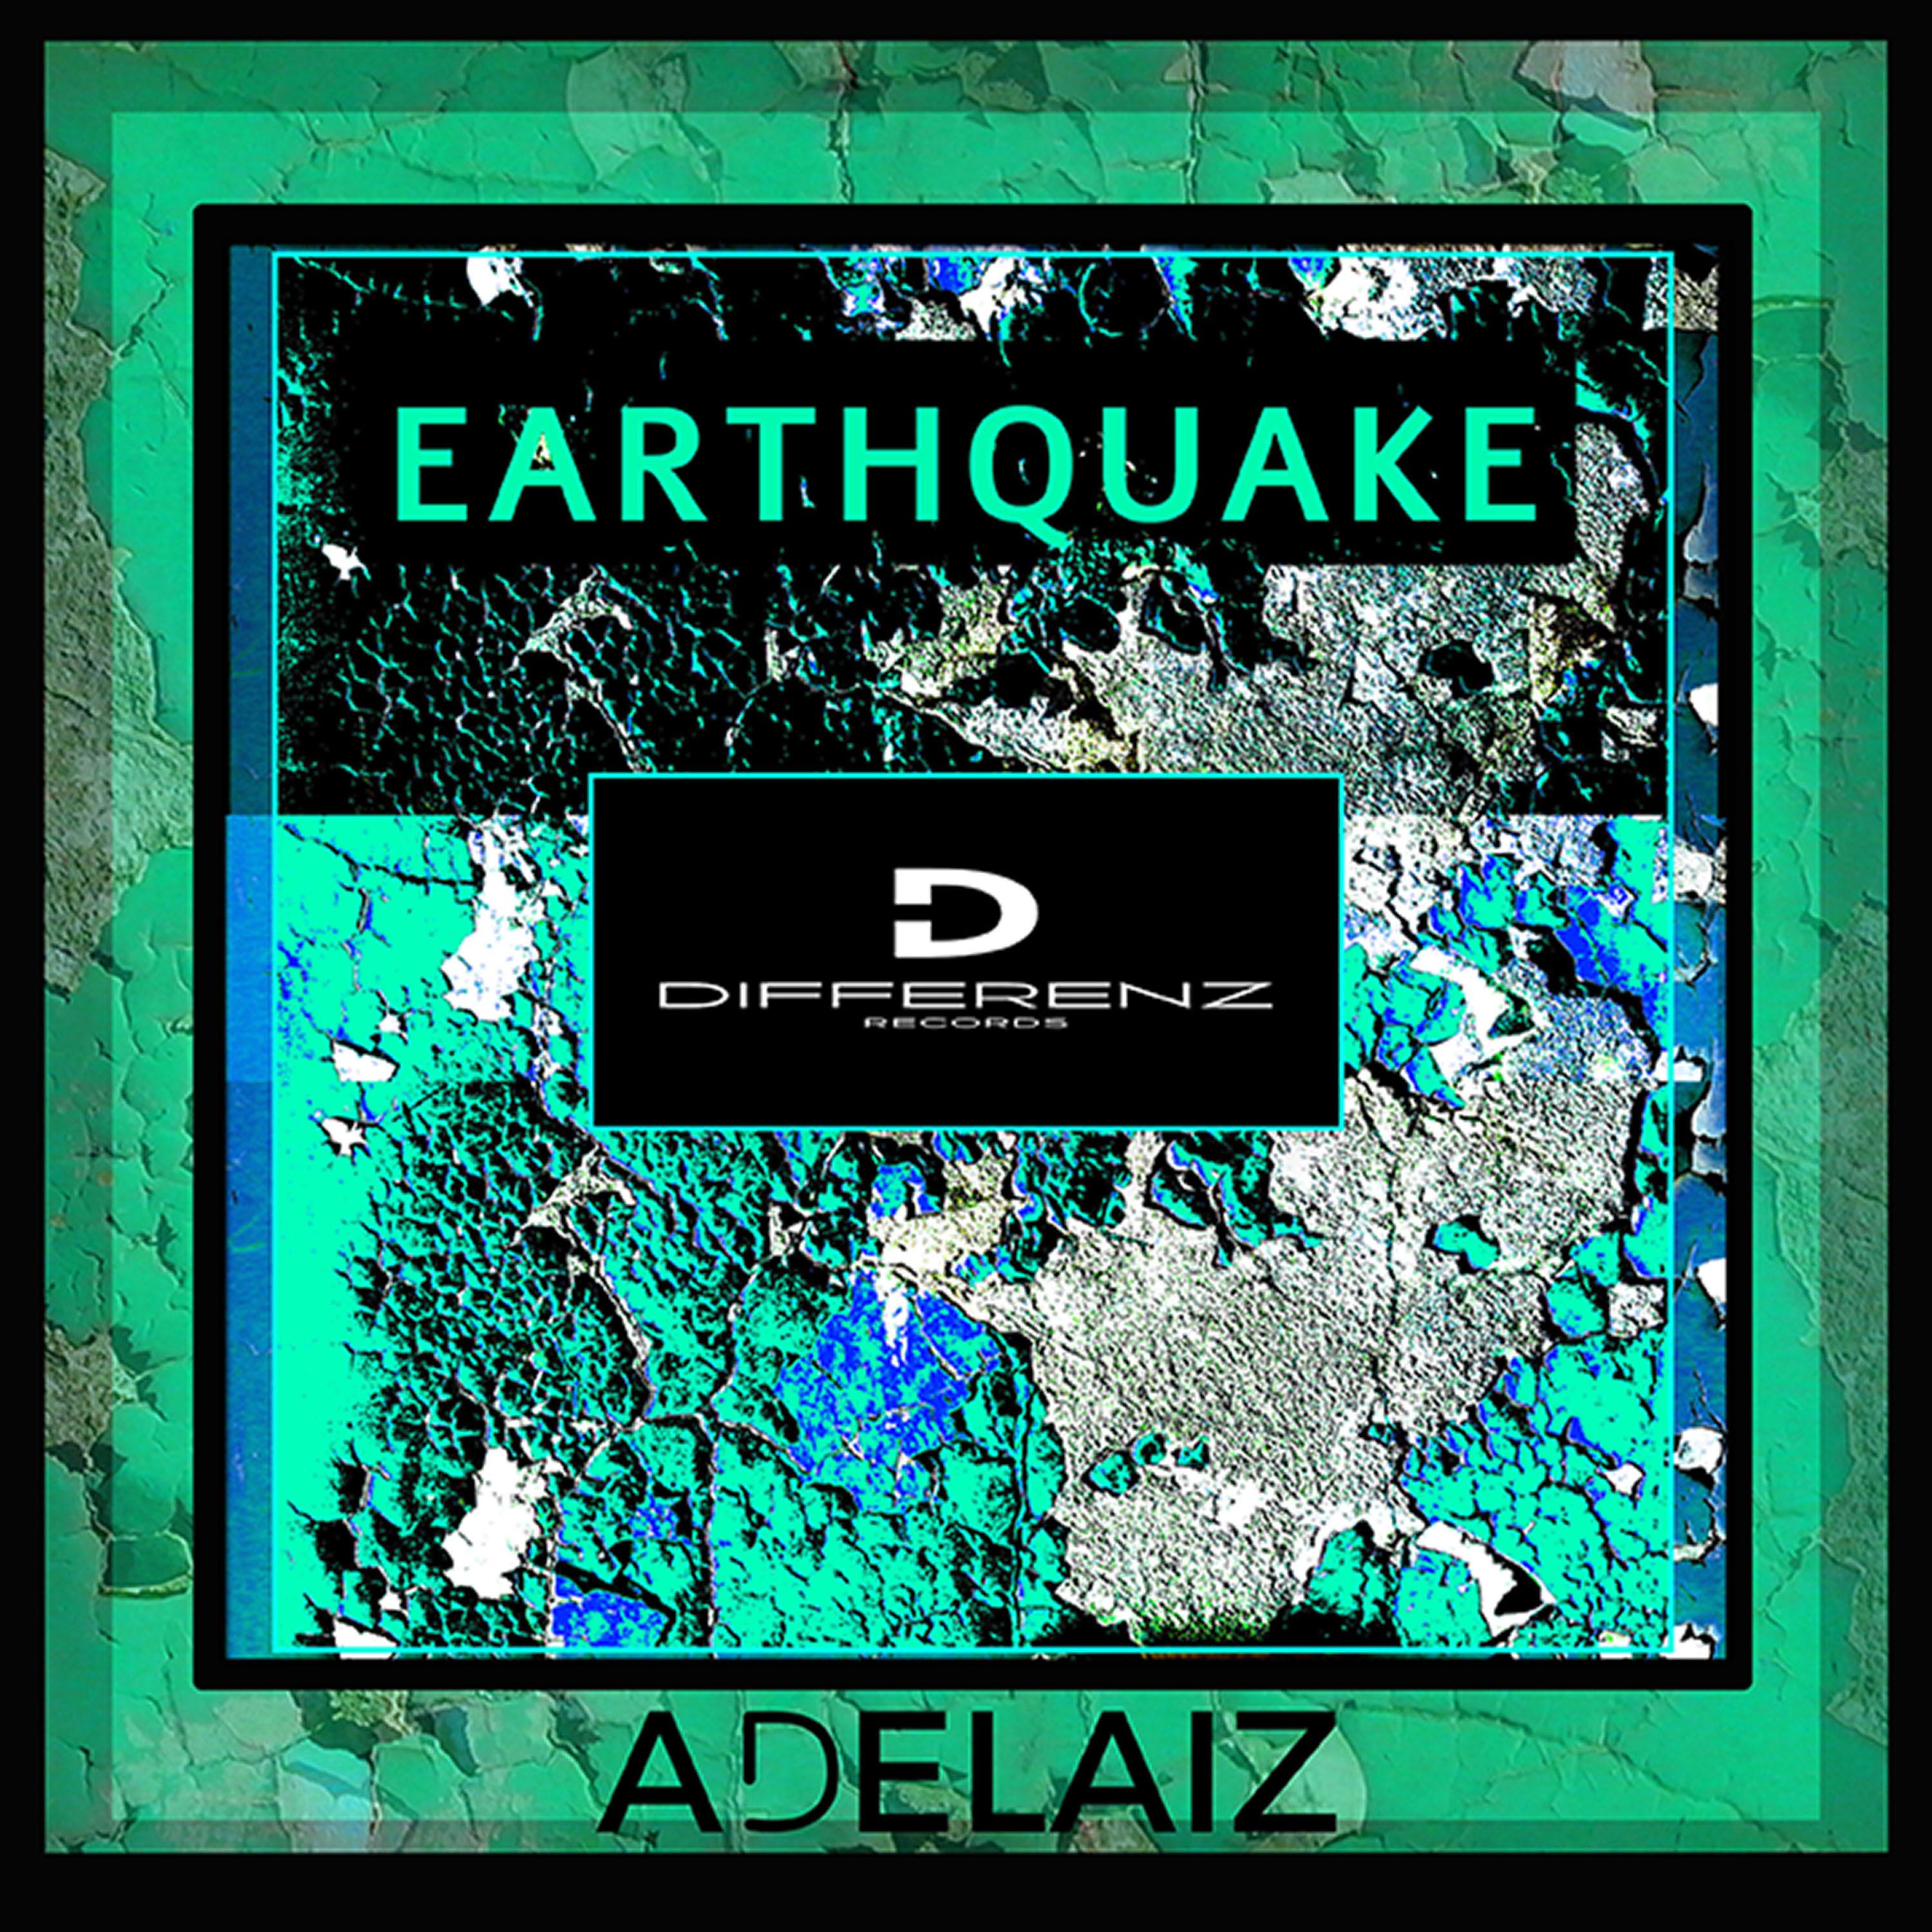 ADELAIZ - Earthquake